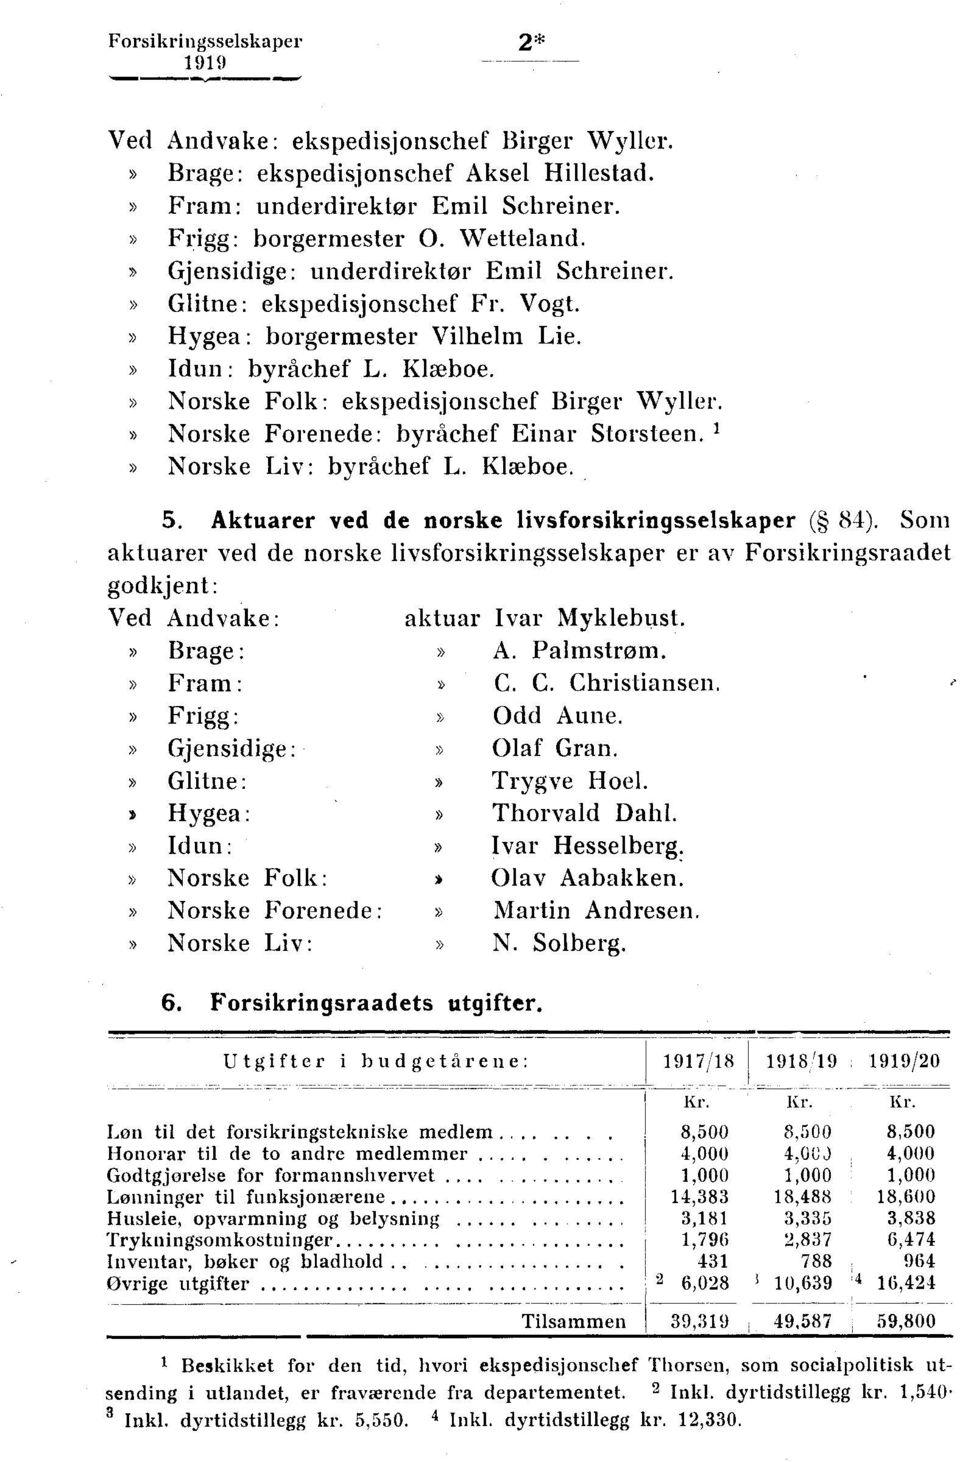 Norske Forenede: byråchef Einar Storsteen. 1 Norske Liv: byråchef L. Klæboe. 5. Aktuarer ved de norske livsforsikringsselskaper ( 84).